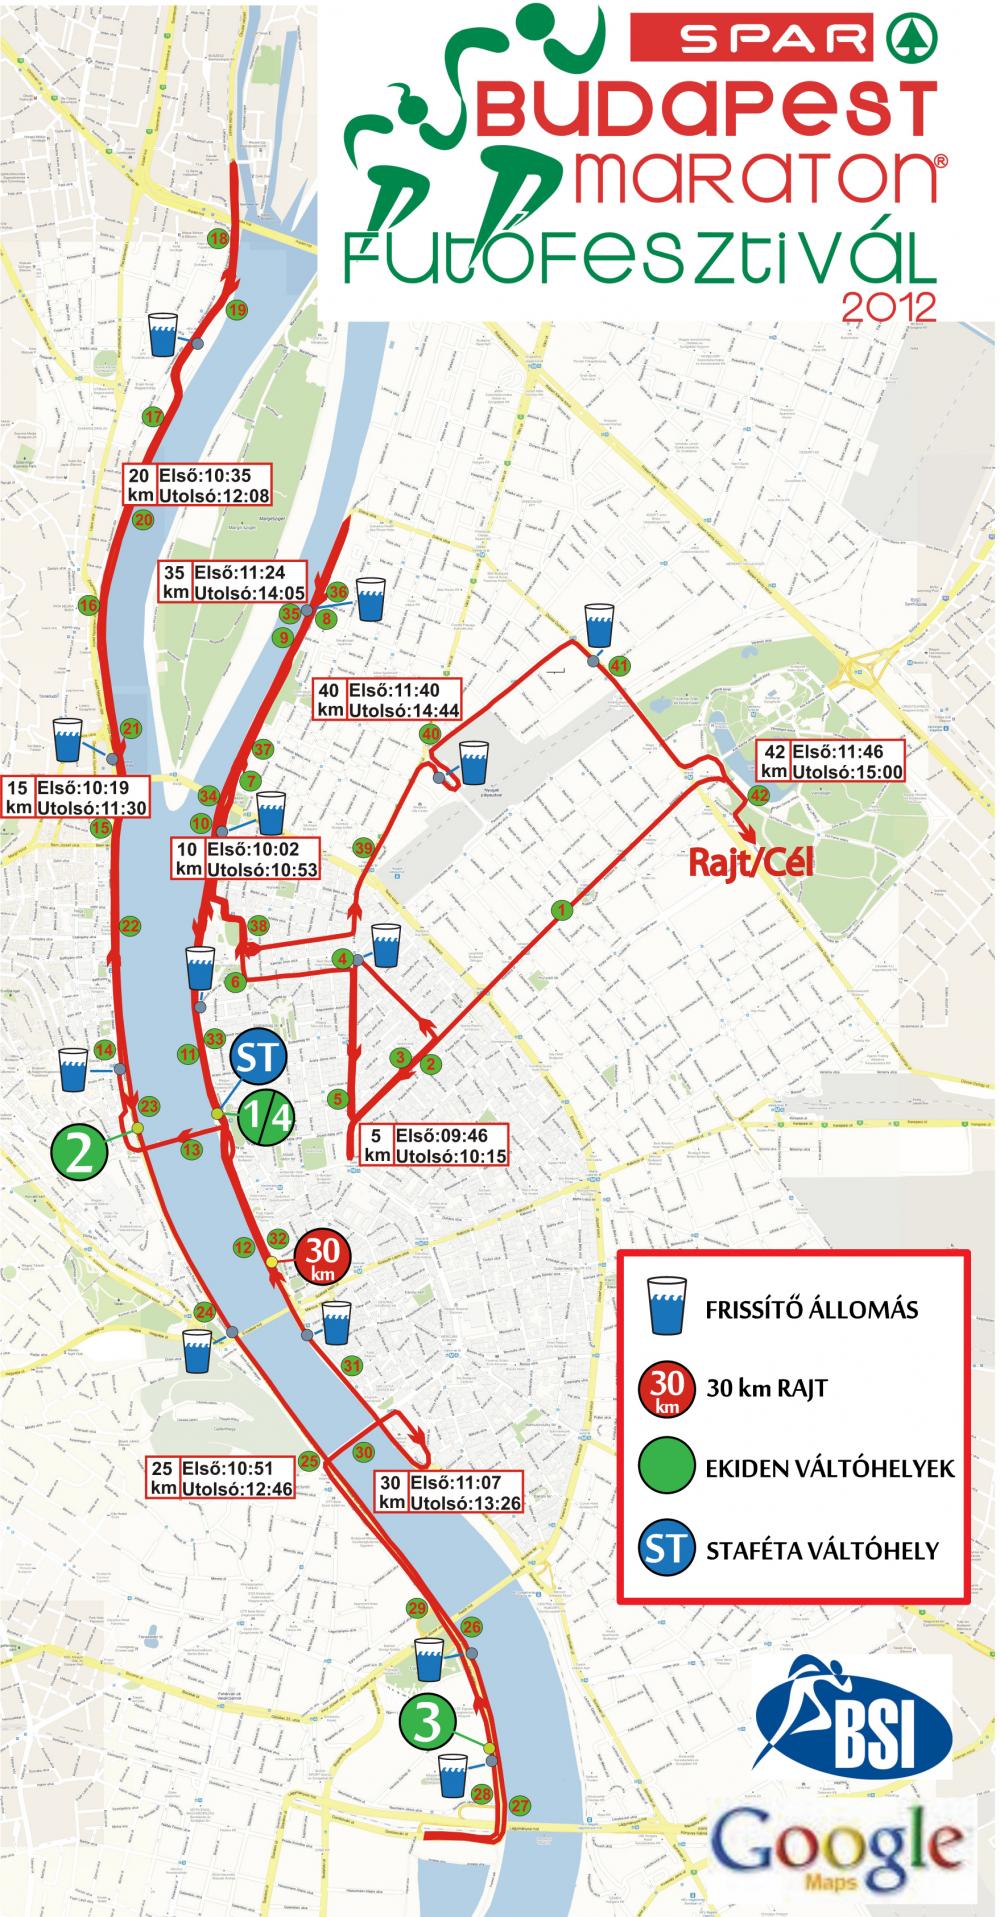 utvonalterv hu budapest térkép 27. Spar Budapest Maraton   térkép   Futanet.hu utvonalterv hu budapest térkép